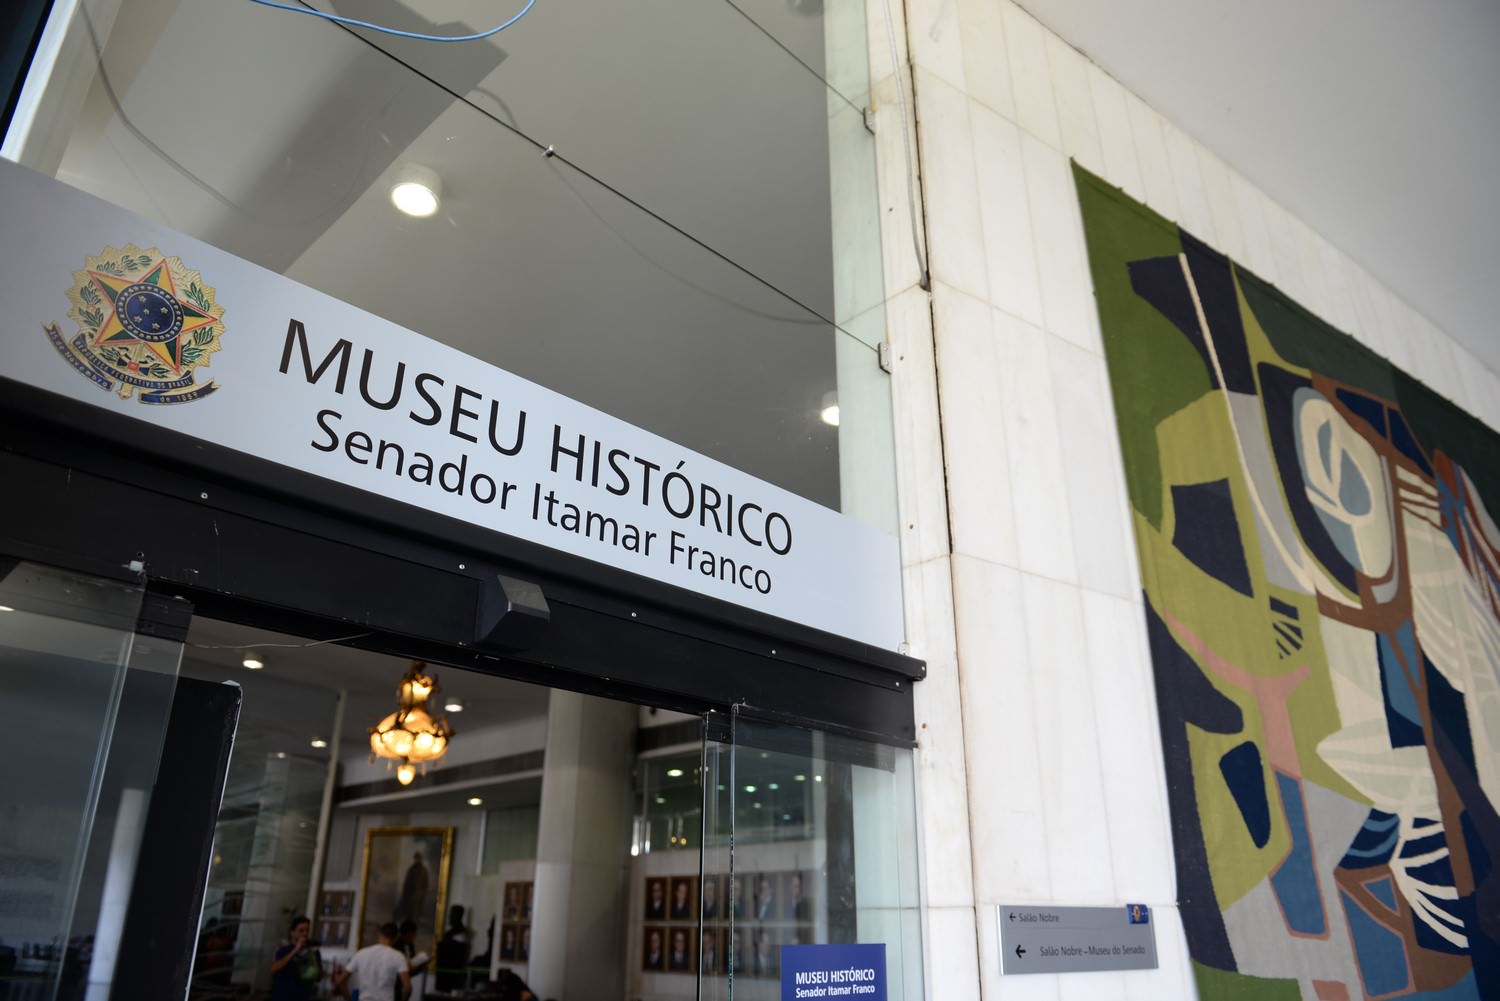 מוזיאון הסנאט. תמונות: רודריגו וויאנה-הסנאט.